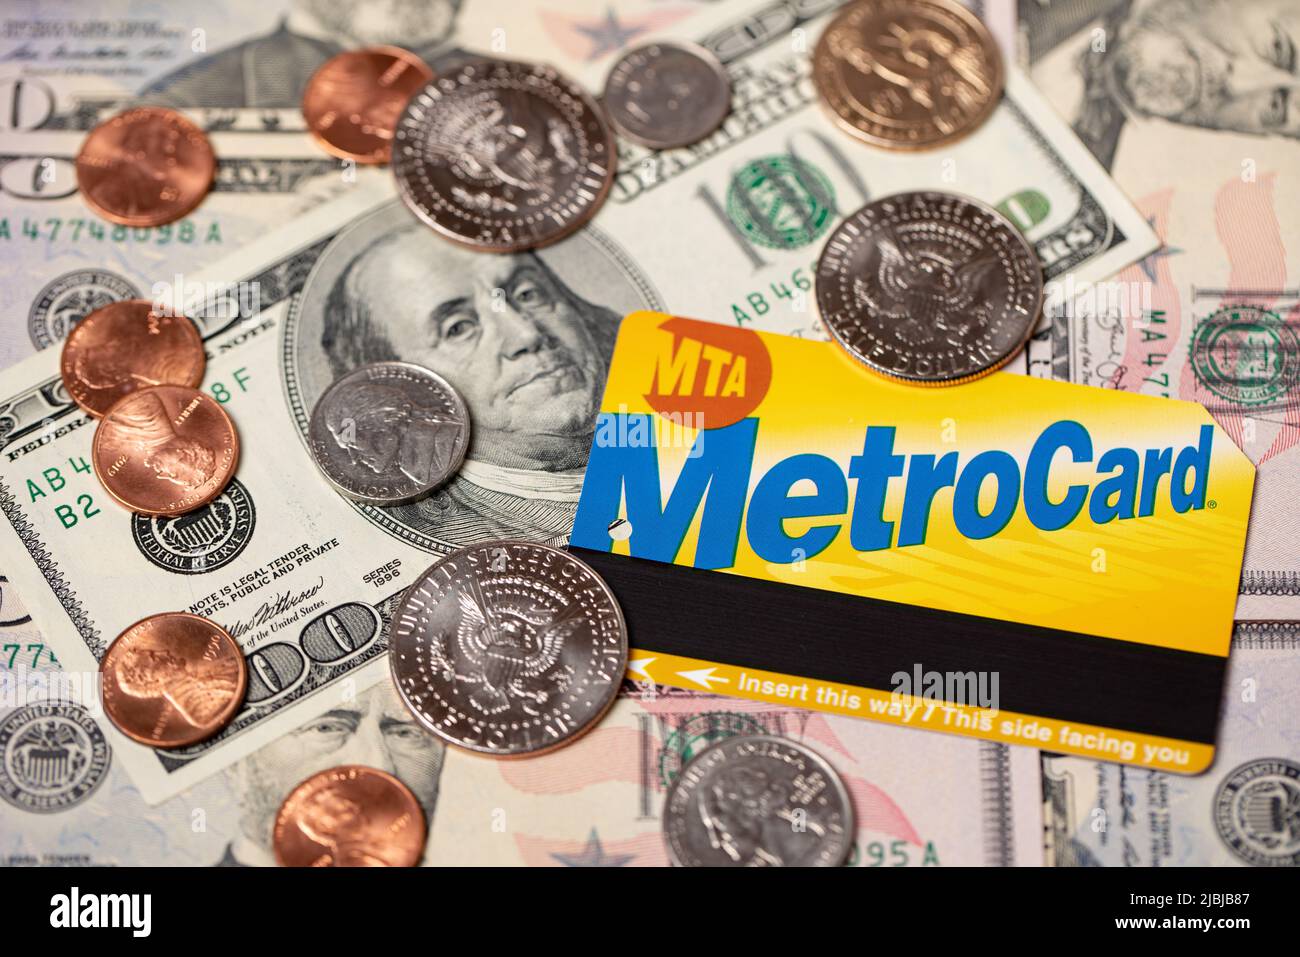 Manhattan, New York/USA - Aprile 8. 2021: Metrocard su banconote in dollari e monete in dollari statunitensi. Costo del trasporto pubblico a NYC. Biglietto per metropolitana e autobus. Foto Stock